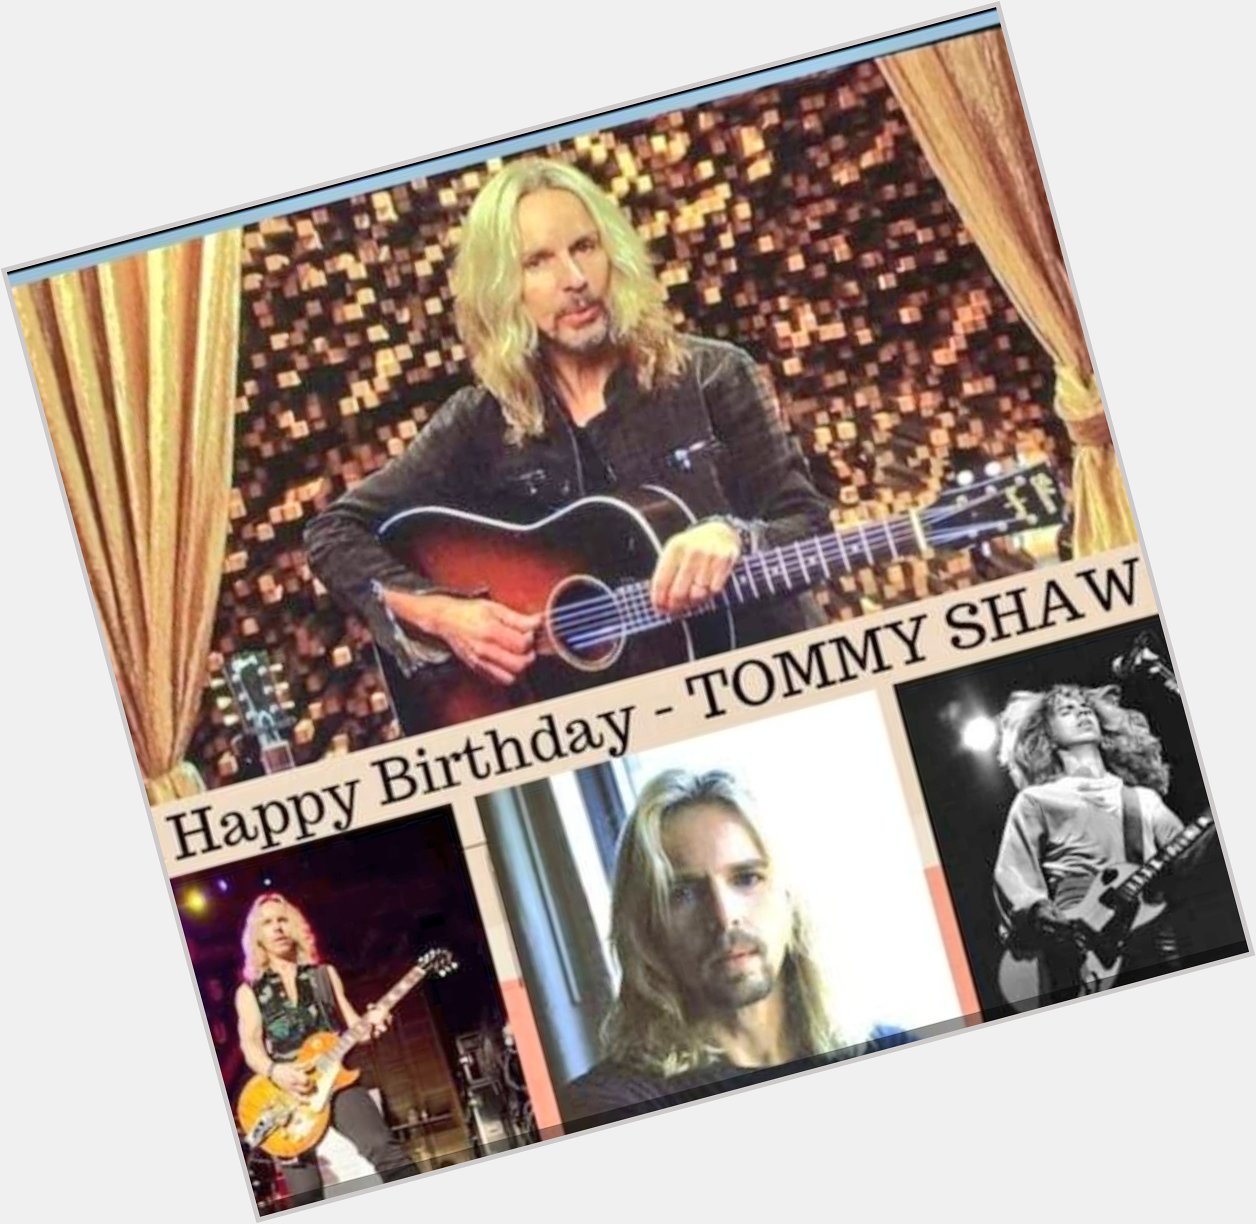 Happy Birthday  Tommy Shaw   68 ( Styx )
September 11, 1953 